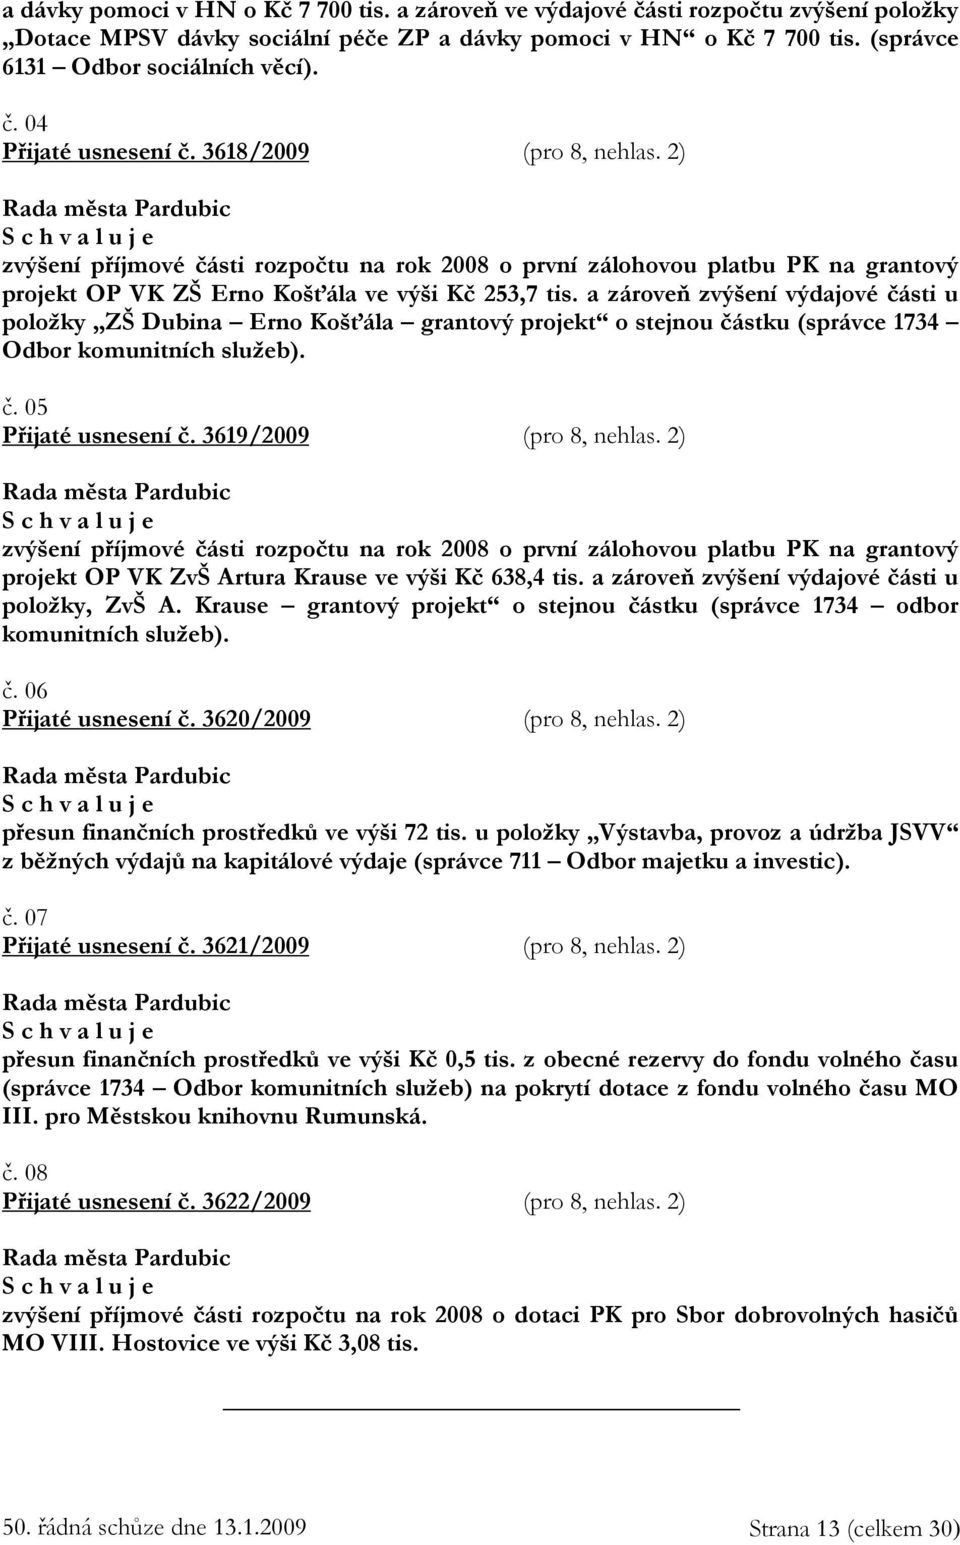 a zároveň zvýšení výdajové části u položky ZŠ Dubina Erno Košťála grantový projekt o stejnou částku (správce 1734 Odbor komunitních služeb). č. 05 Přijaté usnesení č. 3619/2009 (pro 8, nehlas.